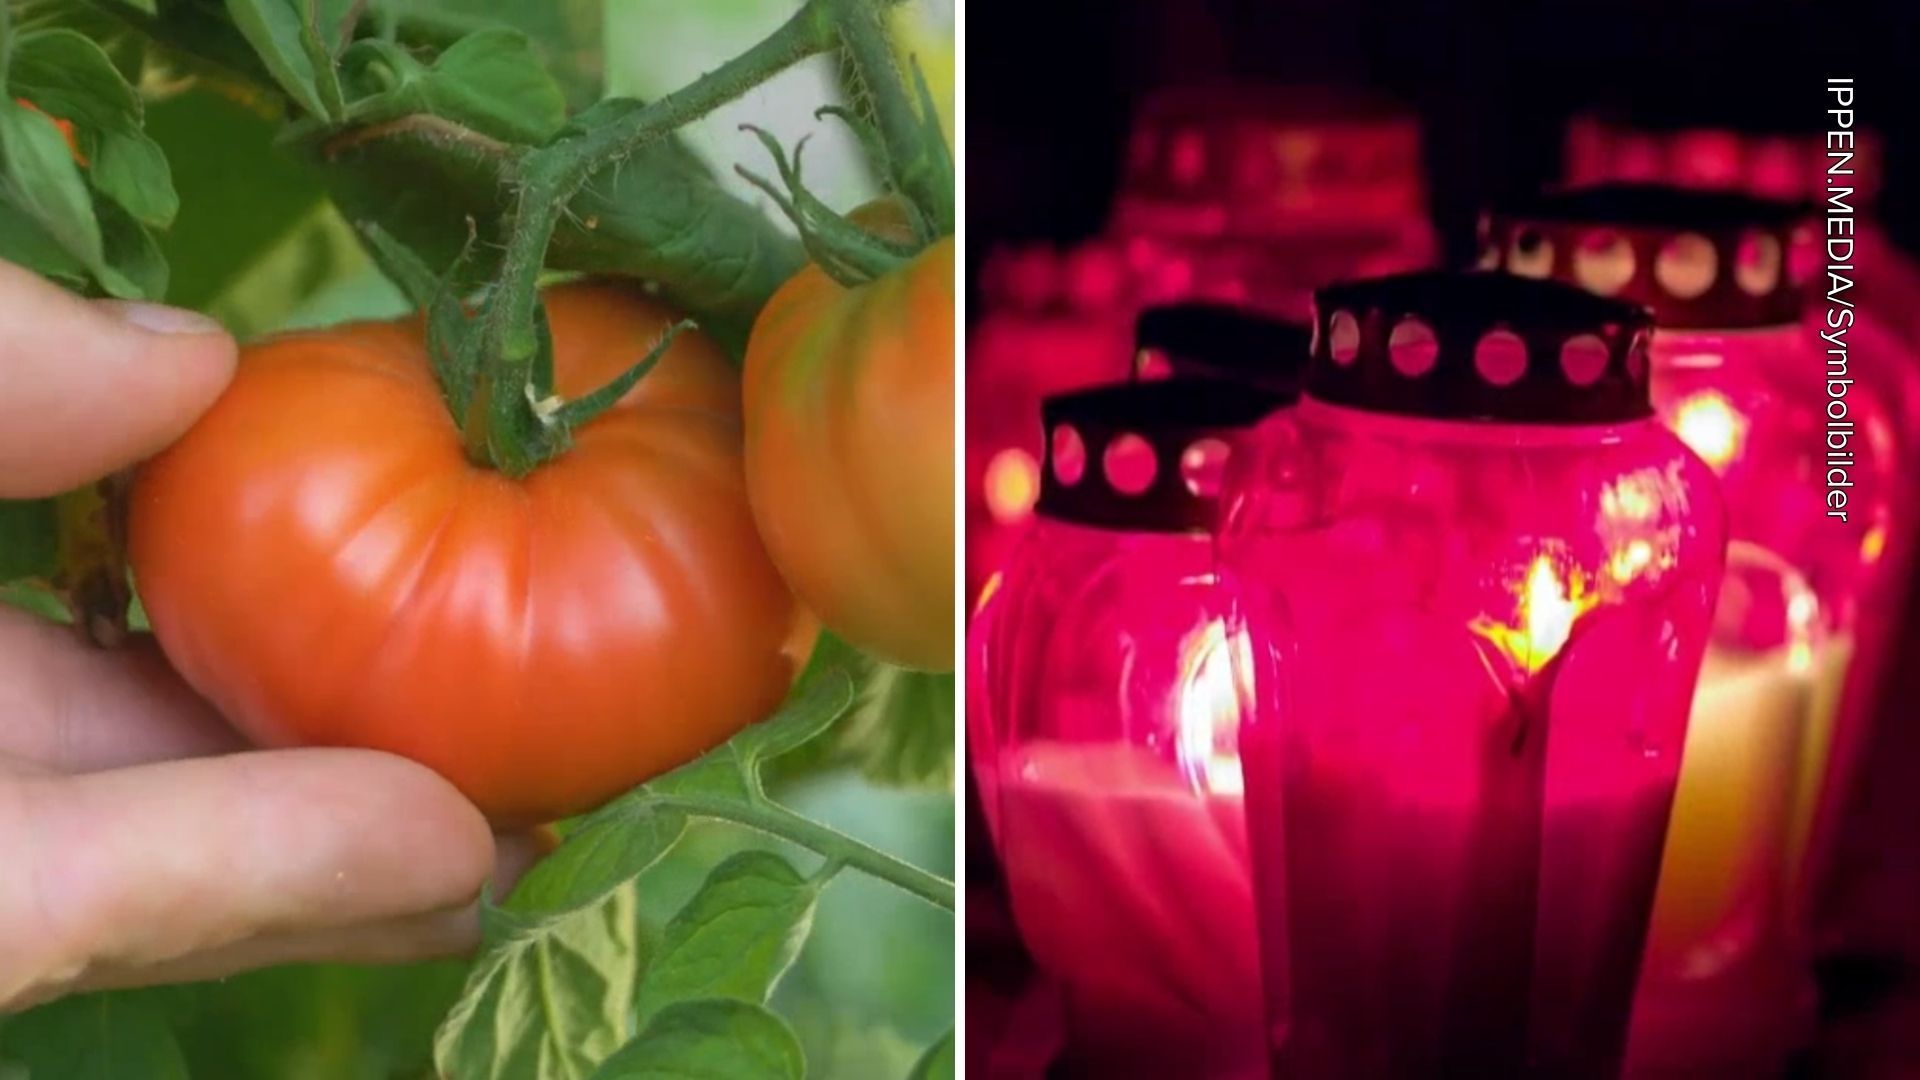 Pflanzen und Gemüse nach Temperatursturz in Gefahr: Grablichter können helfen